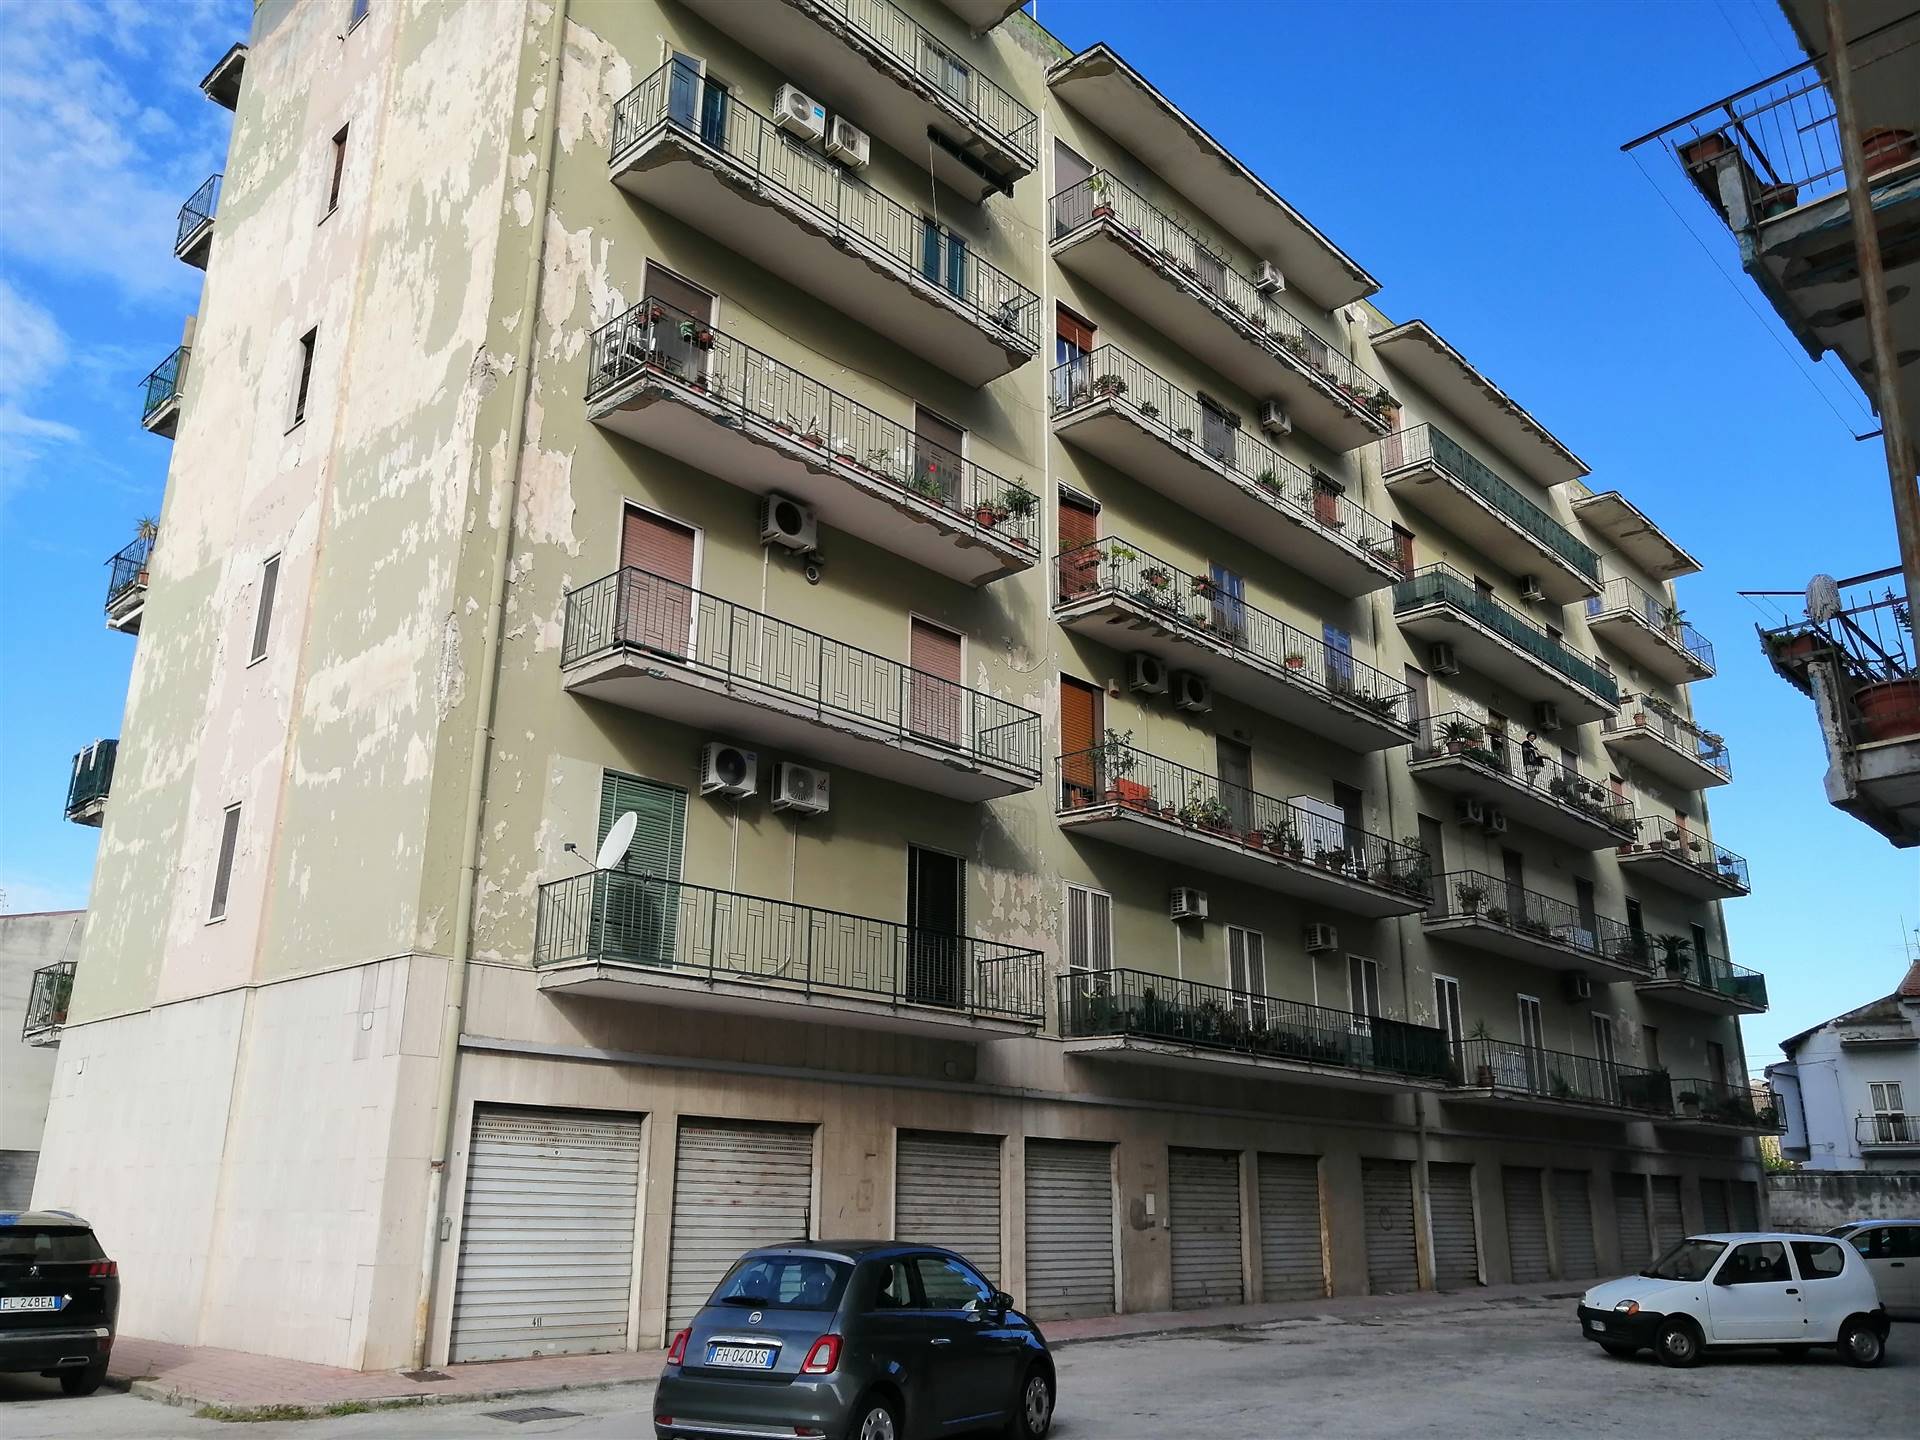 Appartamento in vendita a Santa Maria Capua Vetere, 3 locali, prezzo € 89.000 | PortaleAgenzieImmobiliari.it